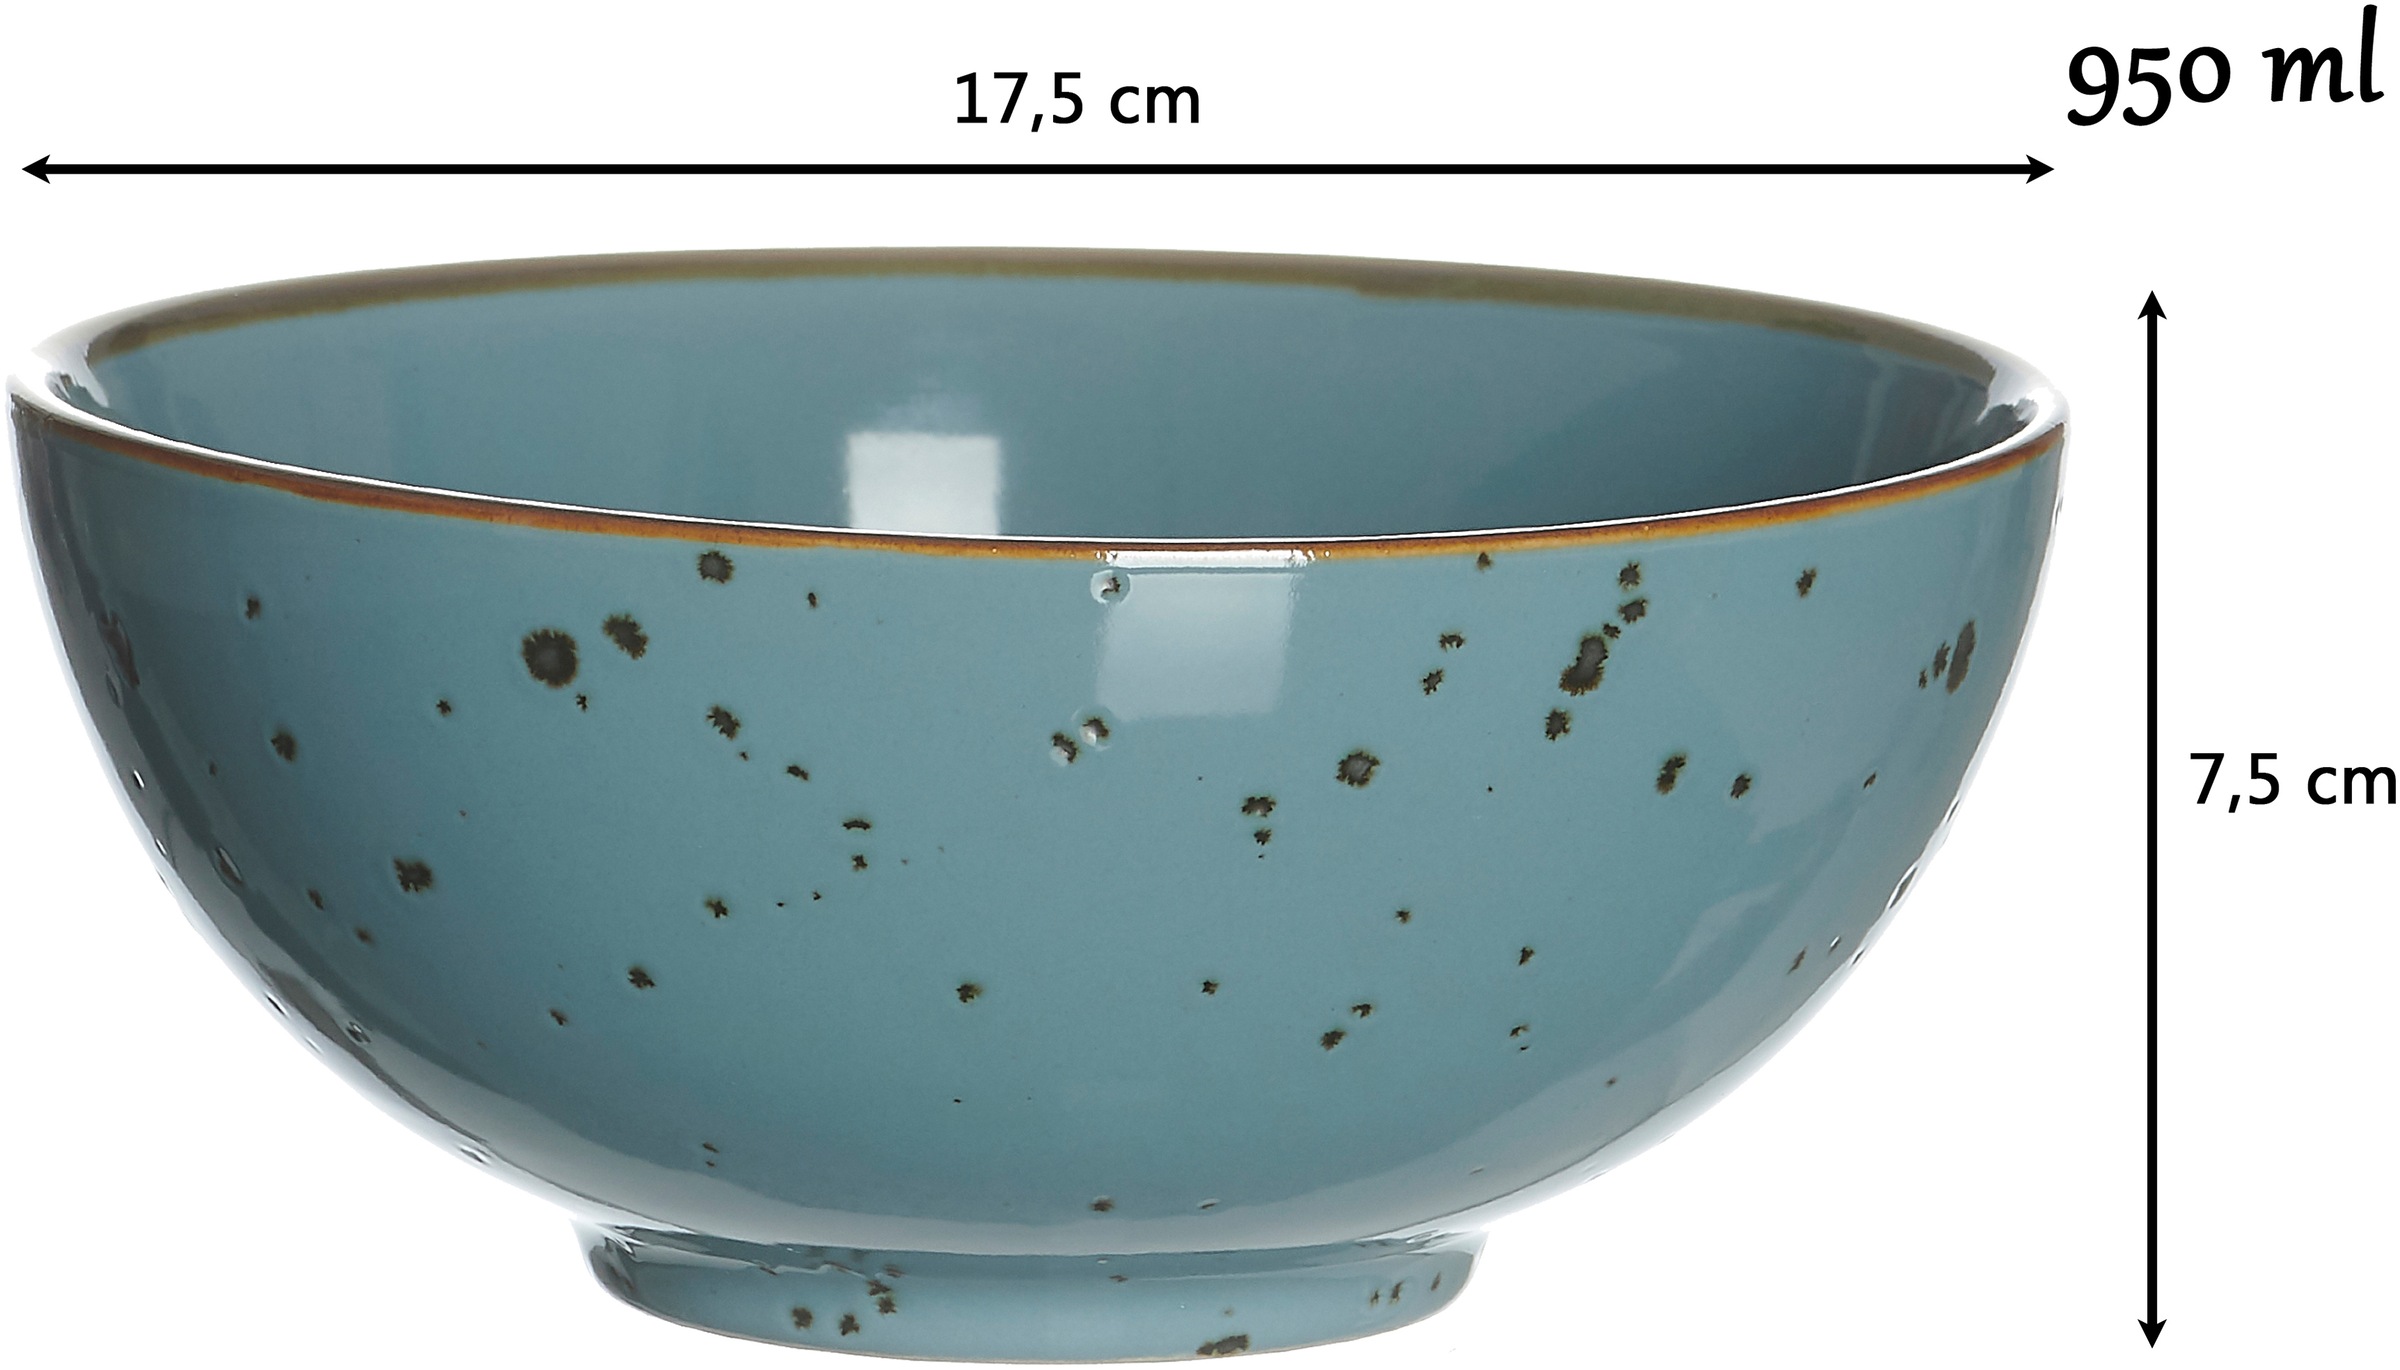 Ritzenhoff & Breker Schale »Xico«, 2 tlg., aus Steinzeug, Buddha-Bowls, Ø 17,5 cm